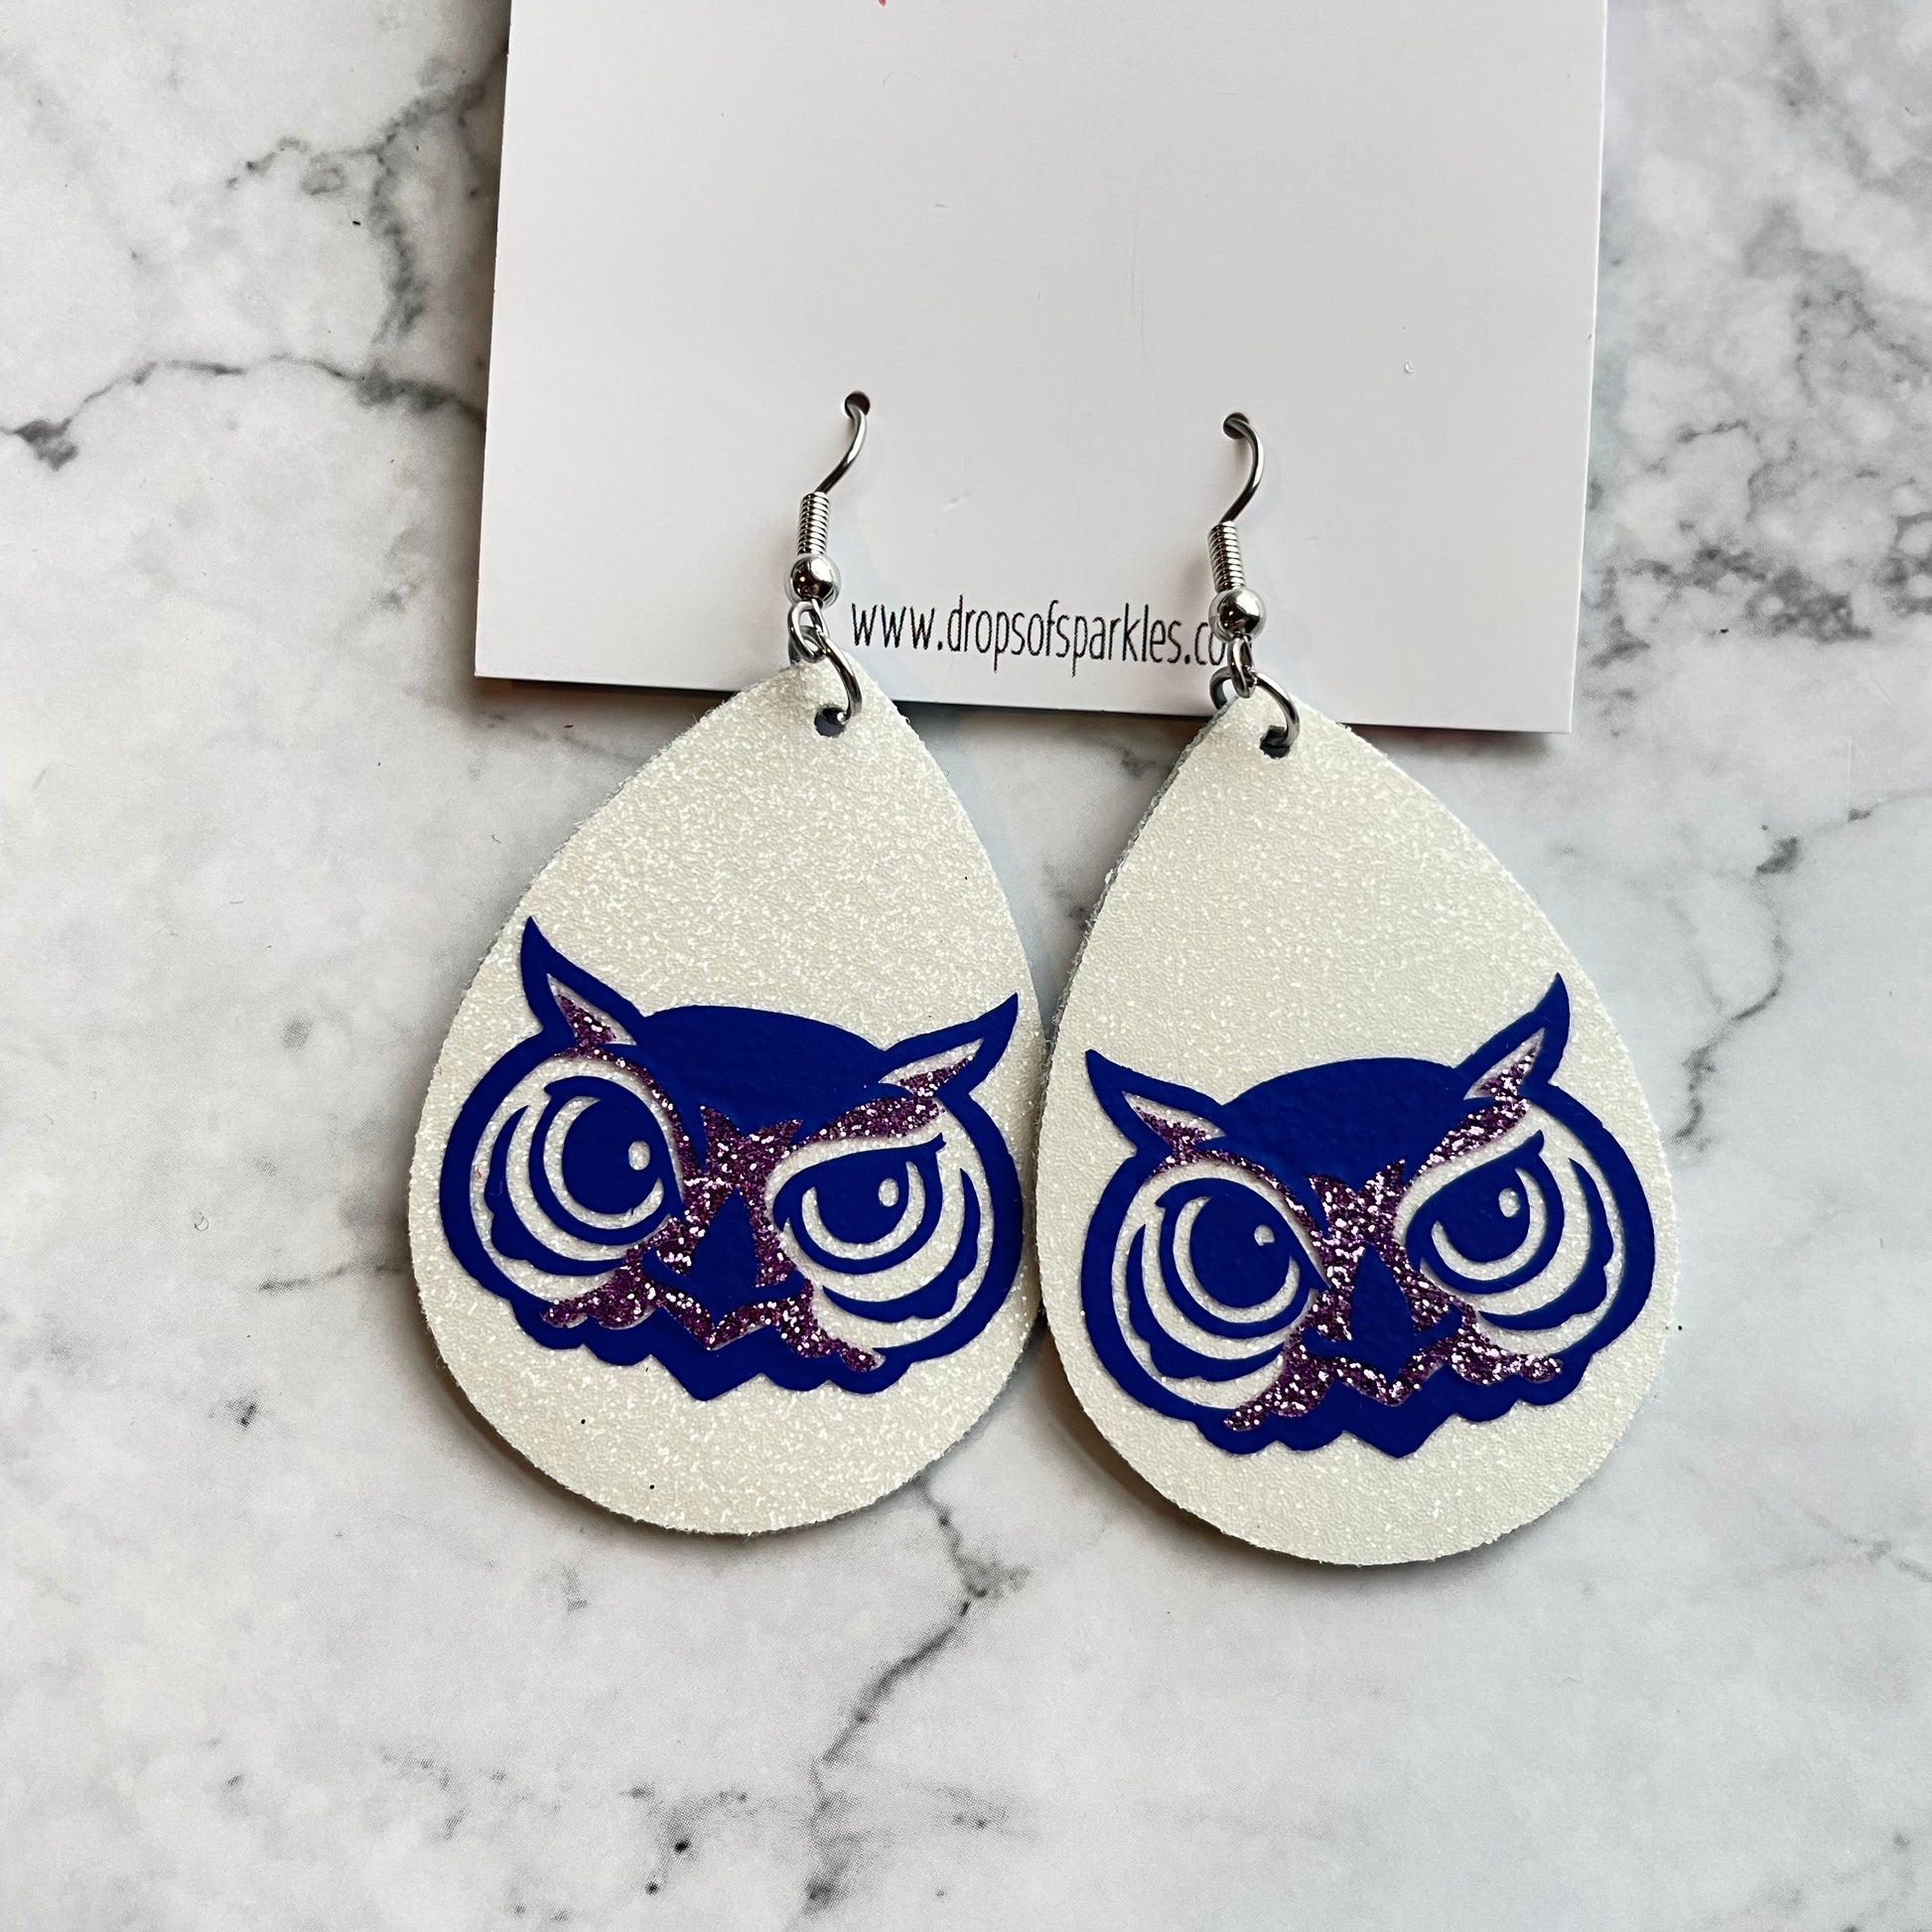 olentangy oak creek owl dangle earrings